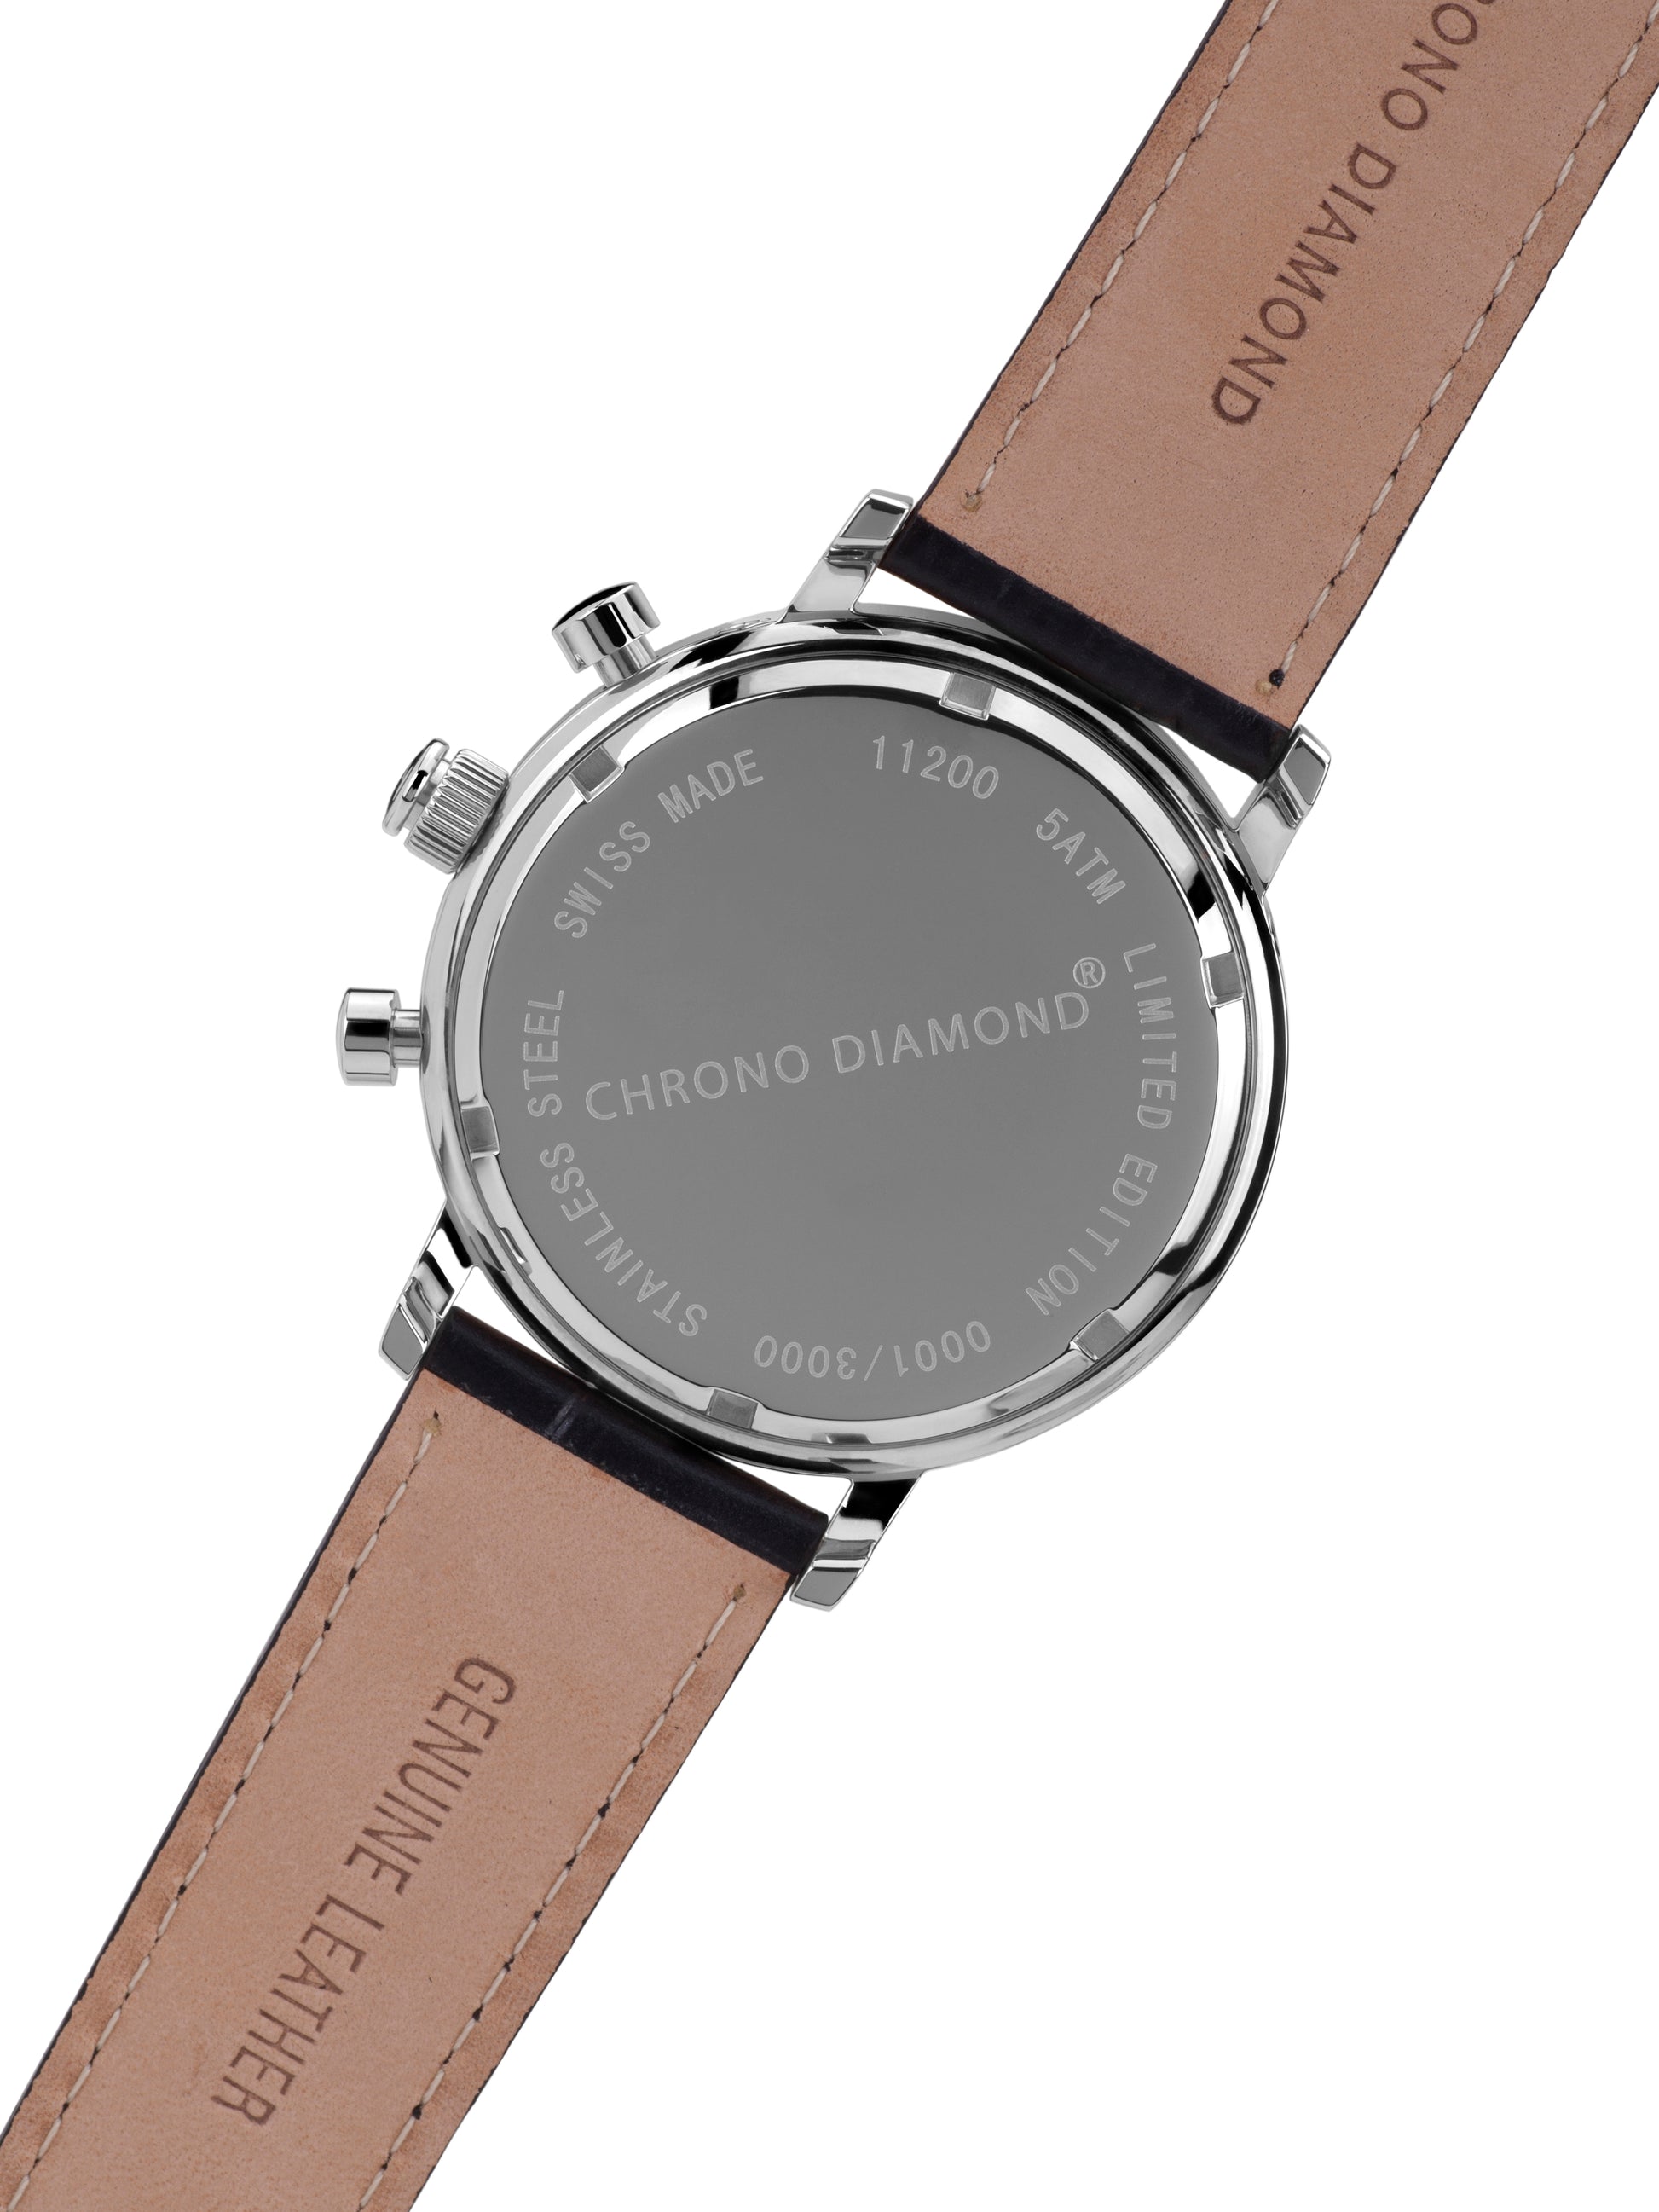 Automatic watches — Argos — Chrono Diamond — steel black